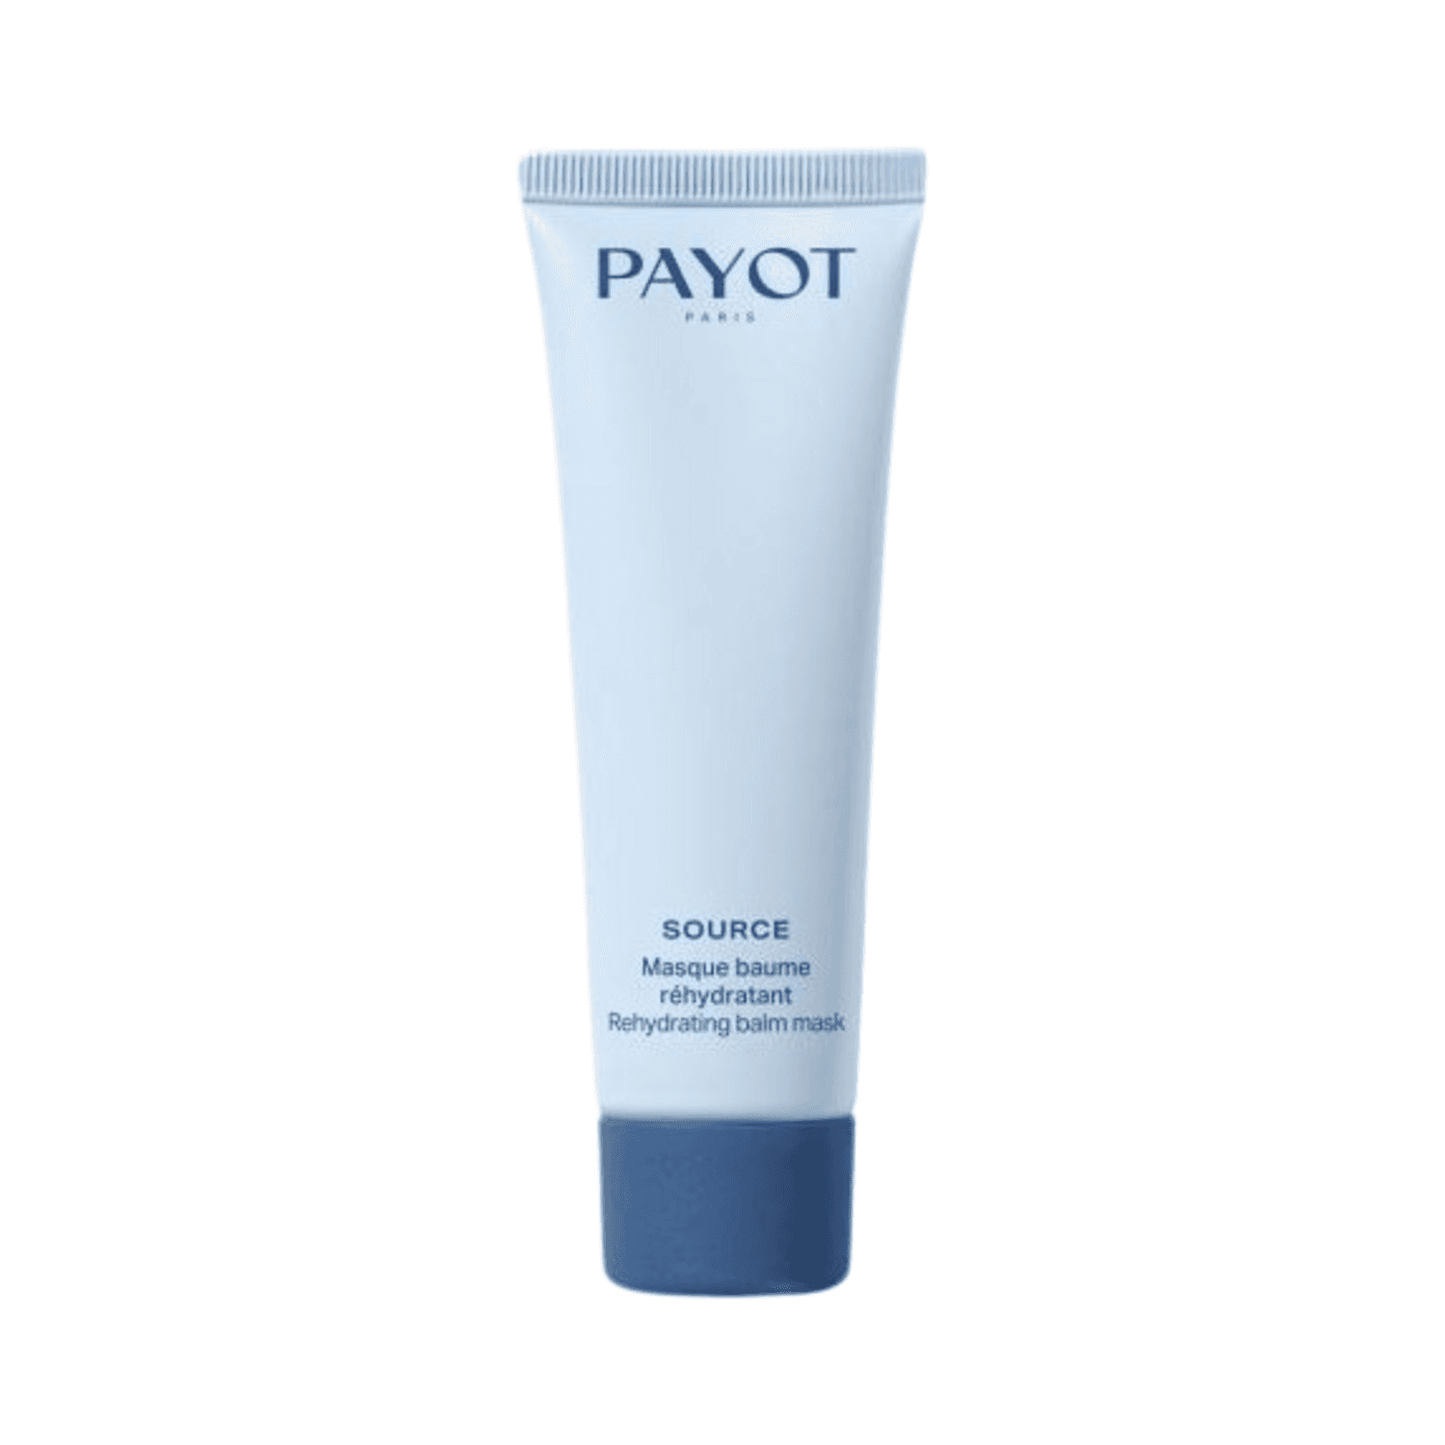 Payot Rehydrating Balm Mask